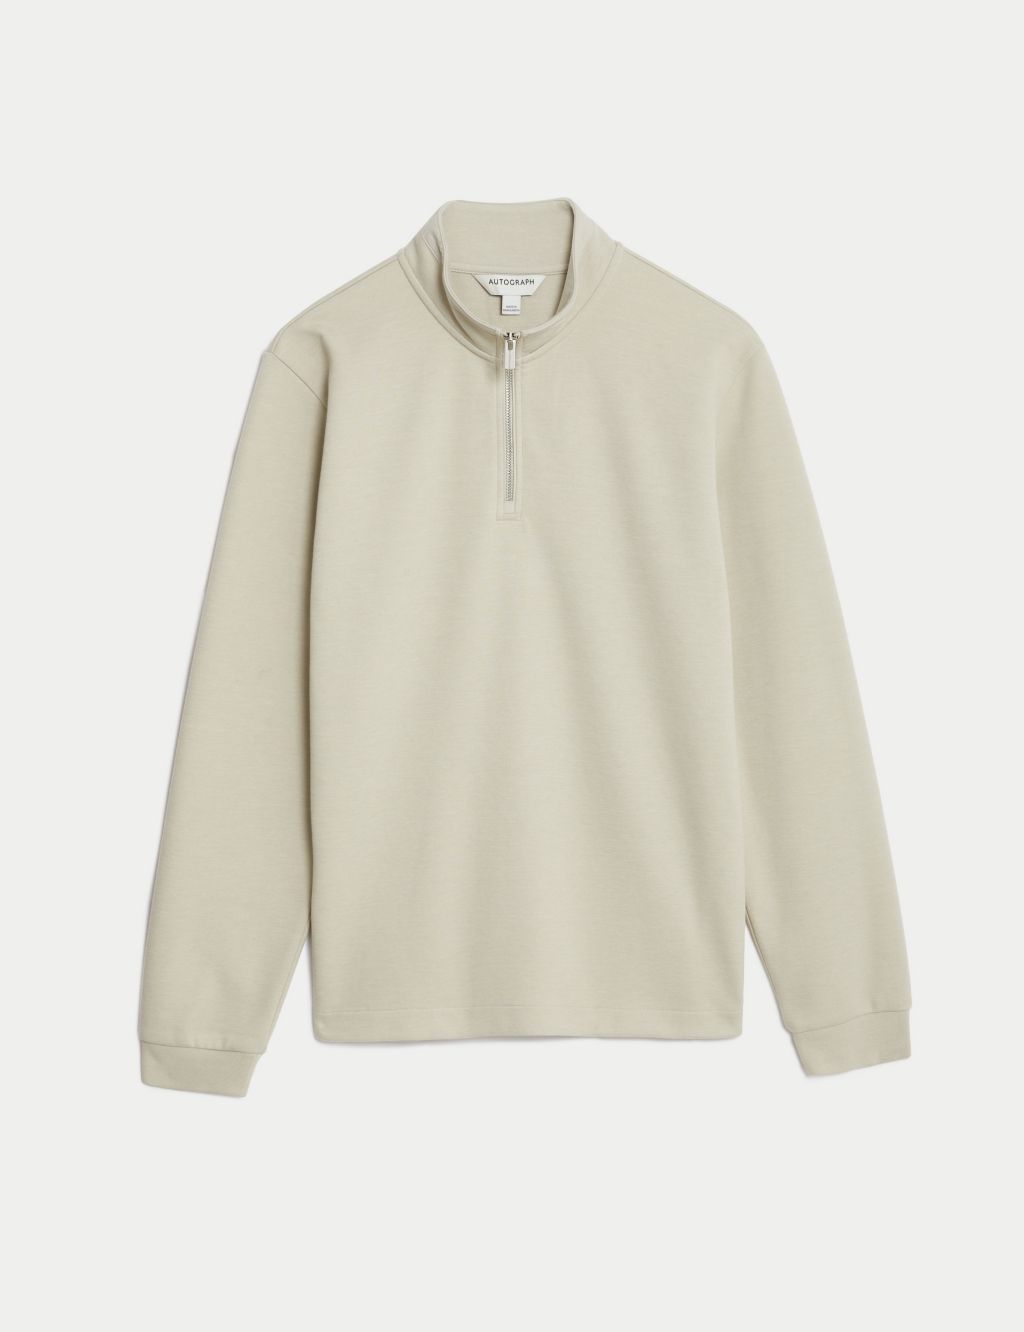 Cotton Blend Half Zip Sweatshirt